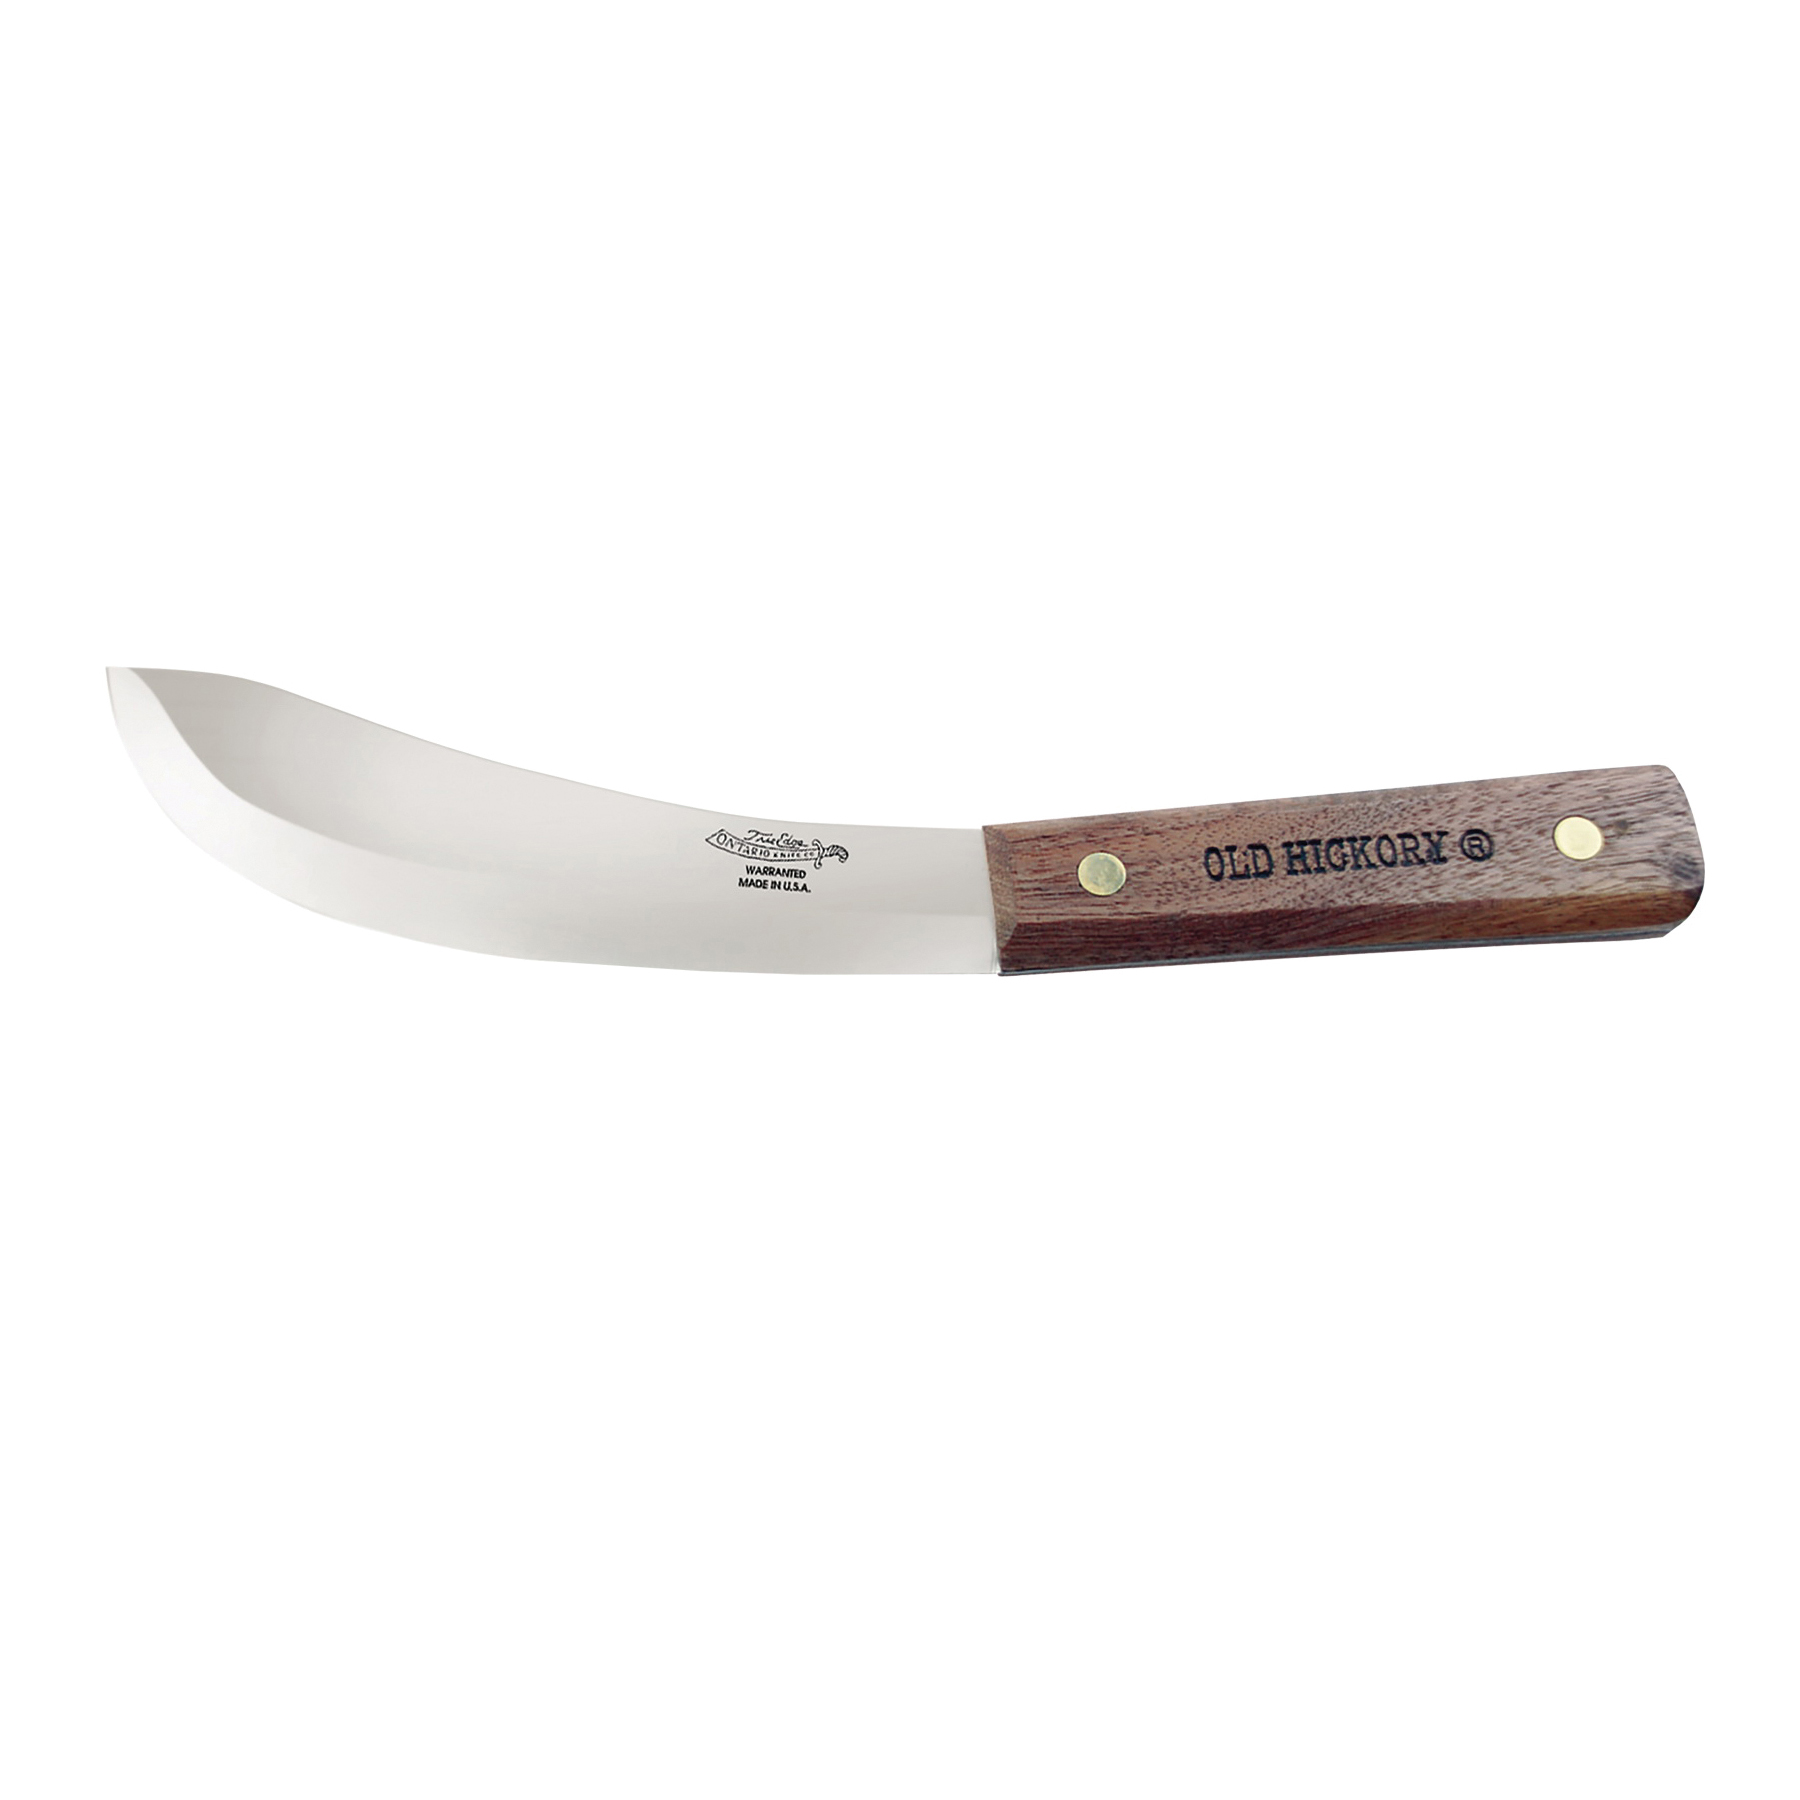 71-6IN Skinner, Carbon Steel Blade, Hardwood Handle, Brown Handle, Flat Bevel Blade